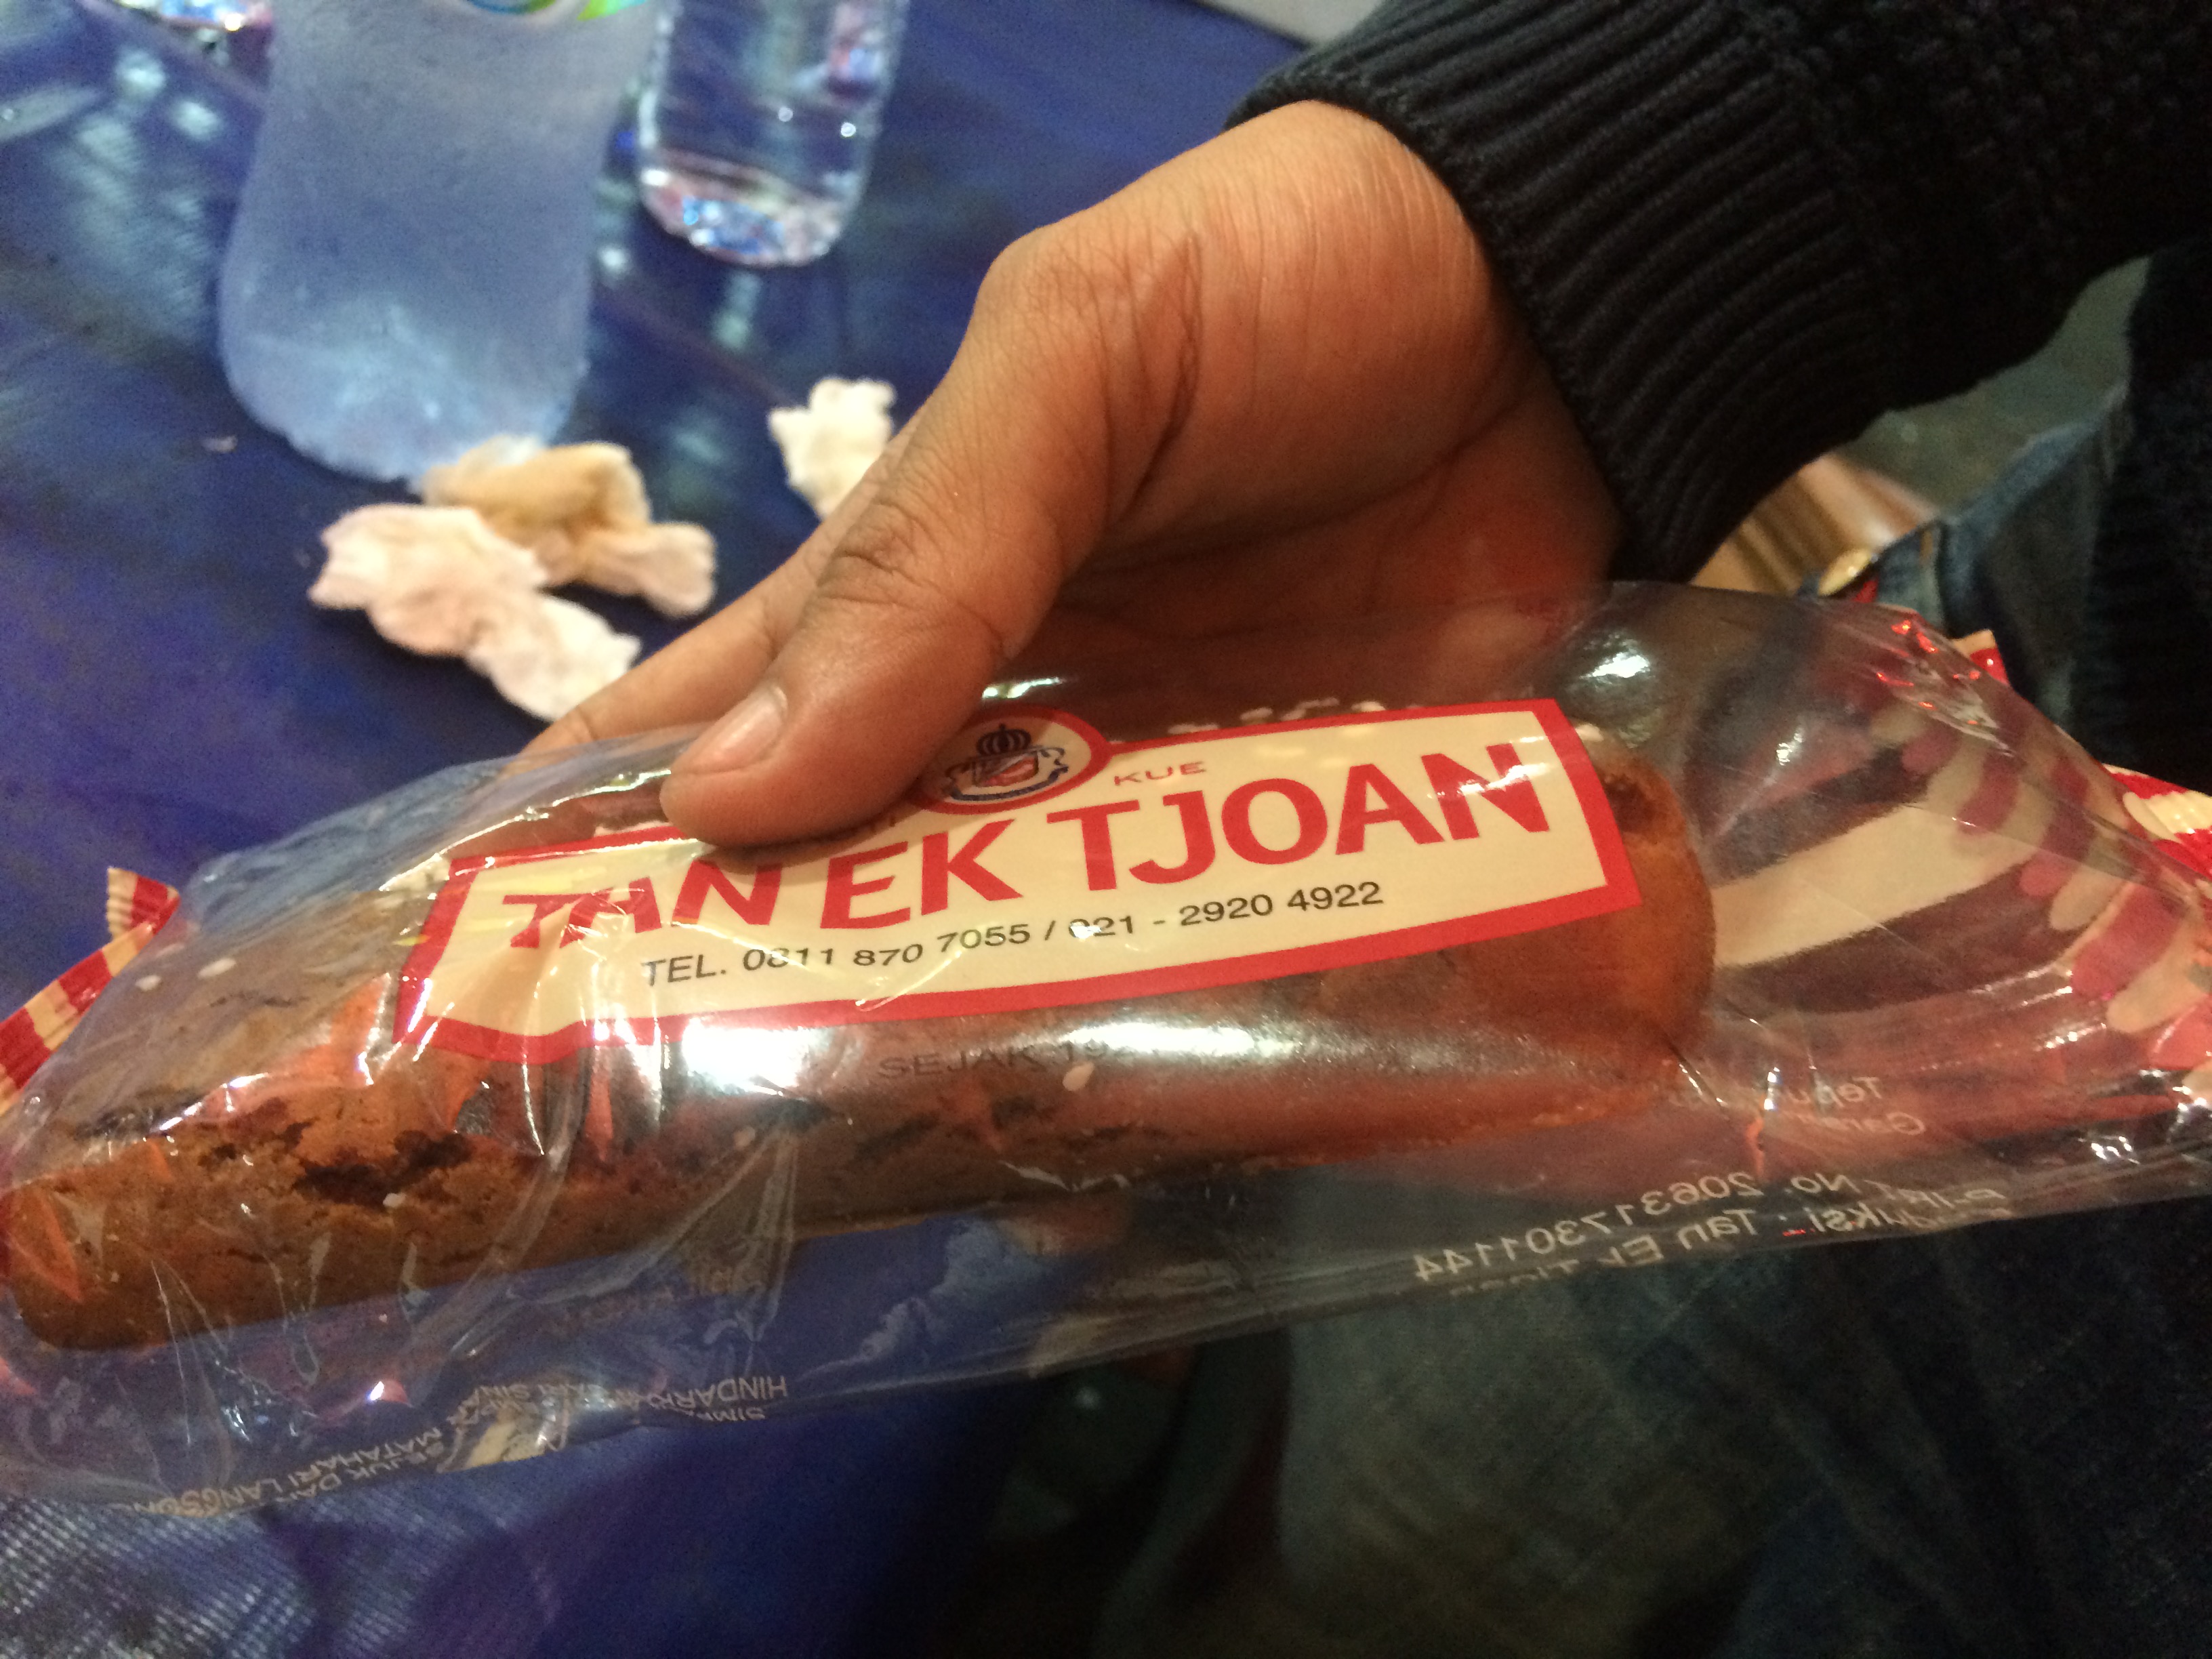 Roti (bread) on a stick from the Tan Ek Tjoan bakery (est. 1921).